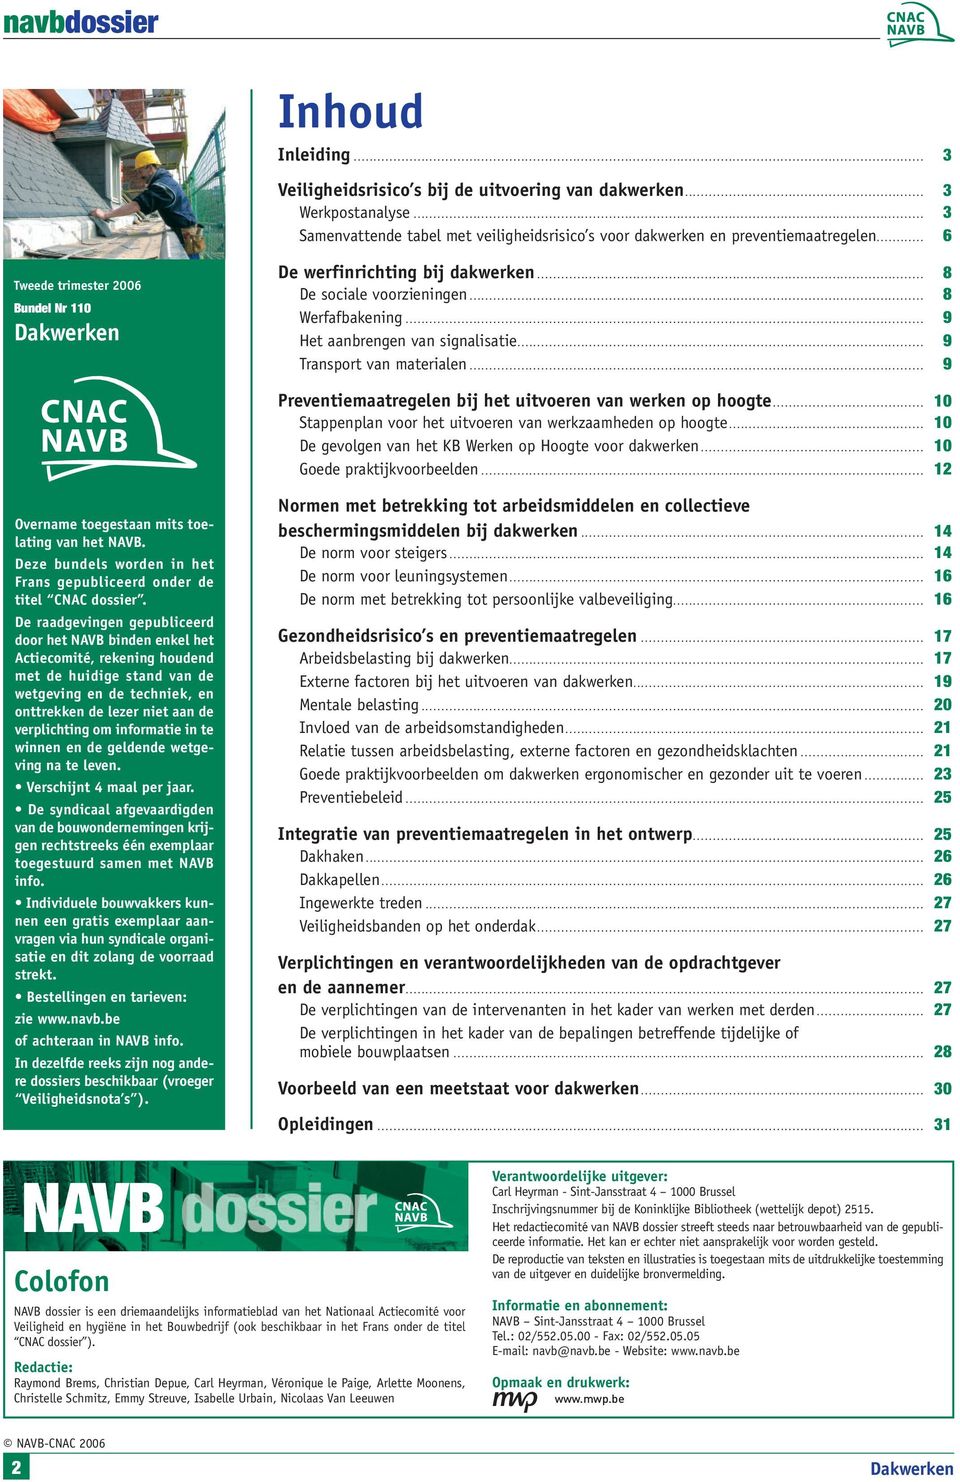 .. 9 Preventiemaatregelen bij het uitvoeren van werken op hoogte... 10 Stappenplan voor het uitvoeren van werkzaamheden op hoogte... 10 De gevolgen van het KB Werken op Hoogte voor dakwerken.